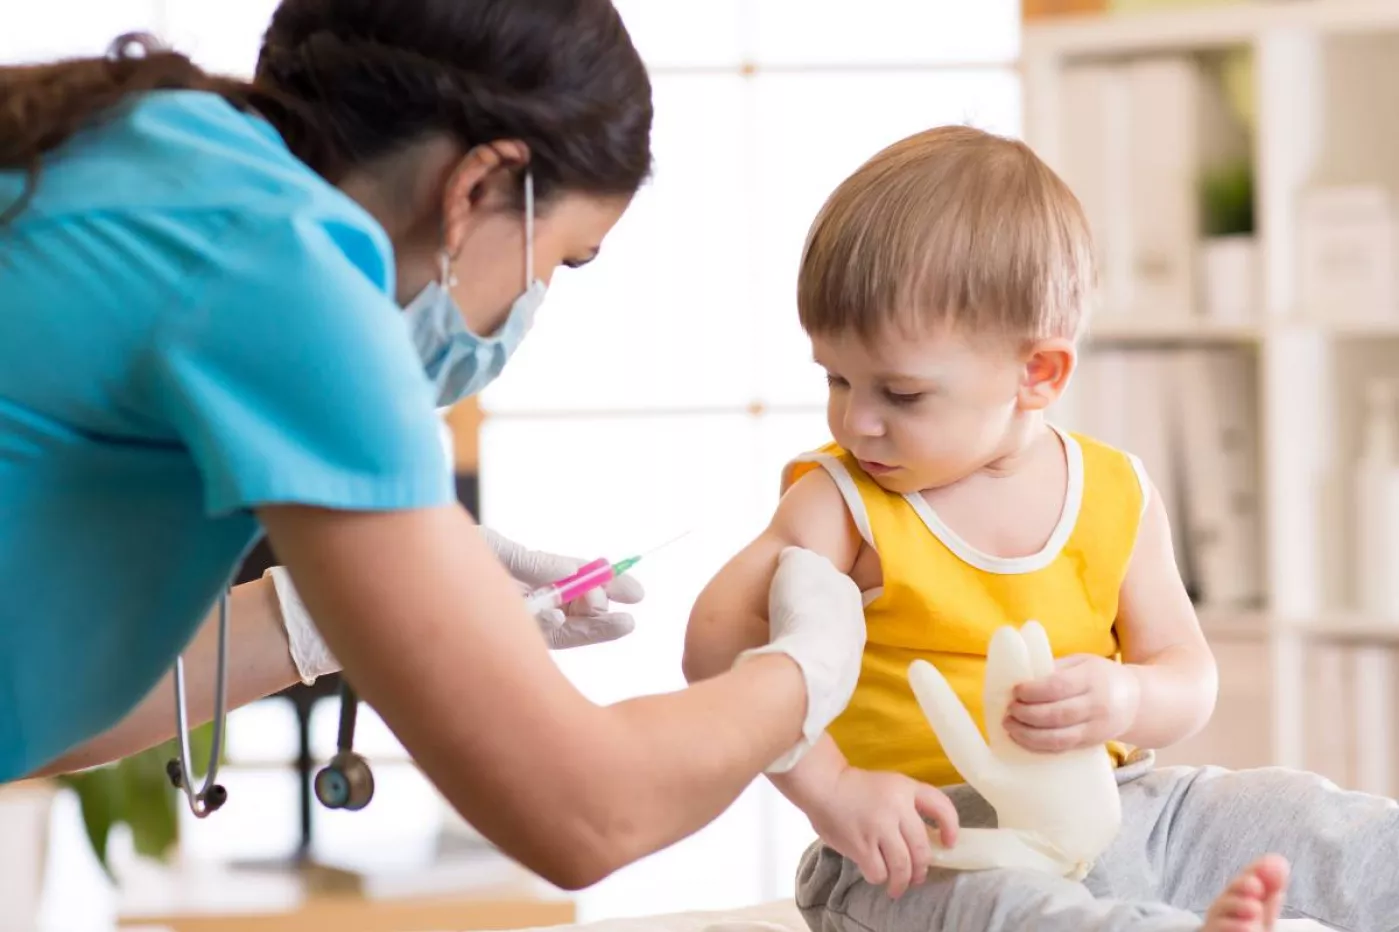 La Aepap plantea una serie de medidas para garantizar la seguridad de pacientes y pediatras en las consultas.